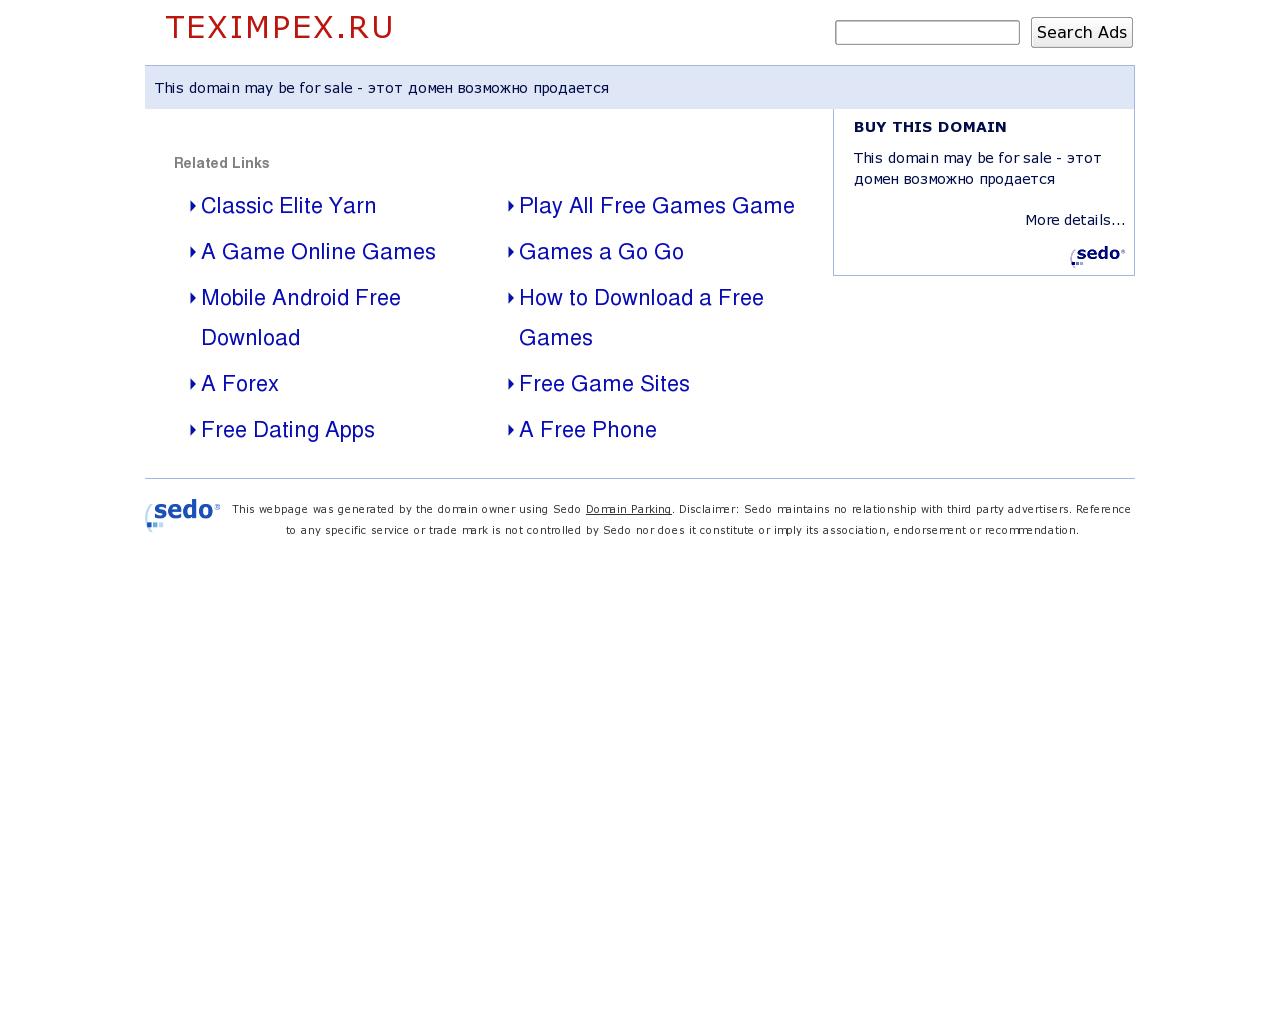 Изображение сайта teximpex.ru в разрешении 1280x1024